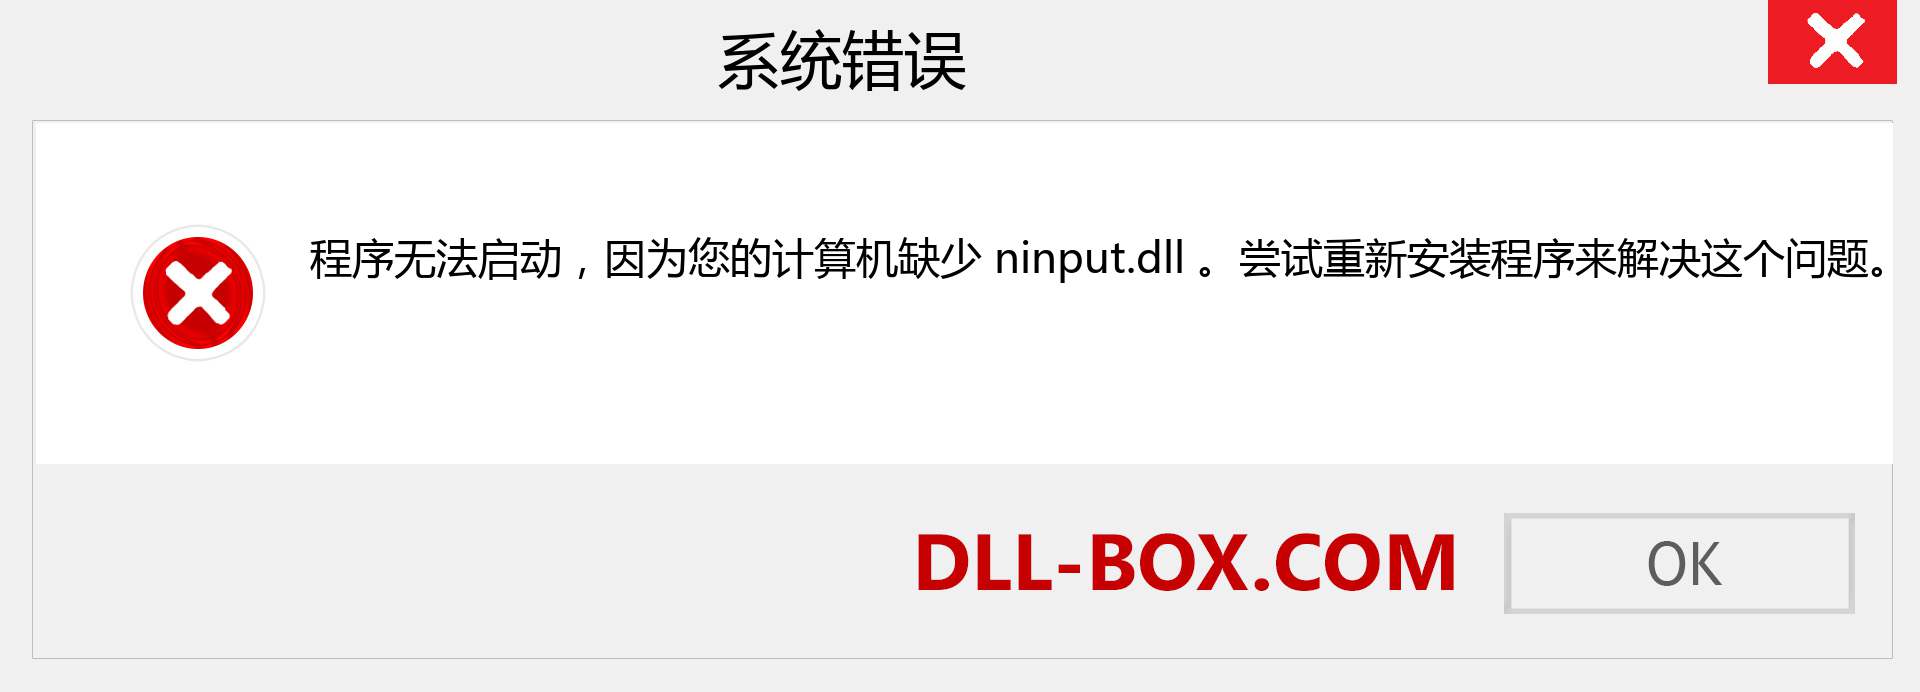 ninput.dll 文件丢失？。 适用于 Windows 7、8、10 的下载 - 修复 Windows、照片、图像上的 ninput dll 丢失错误